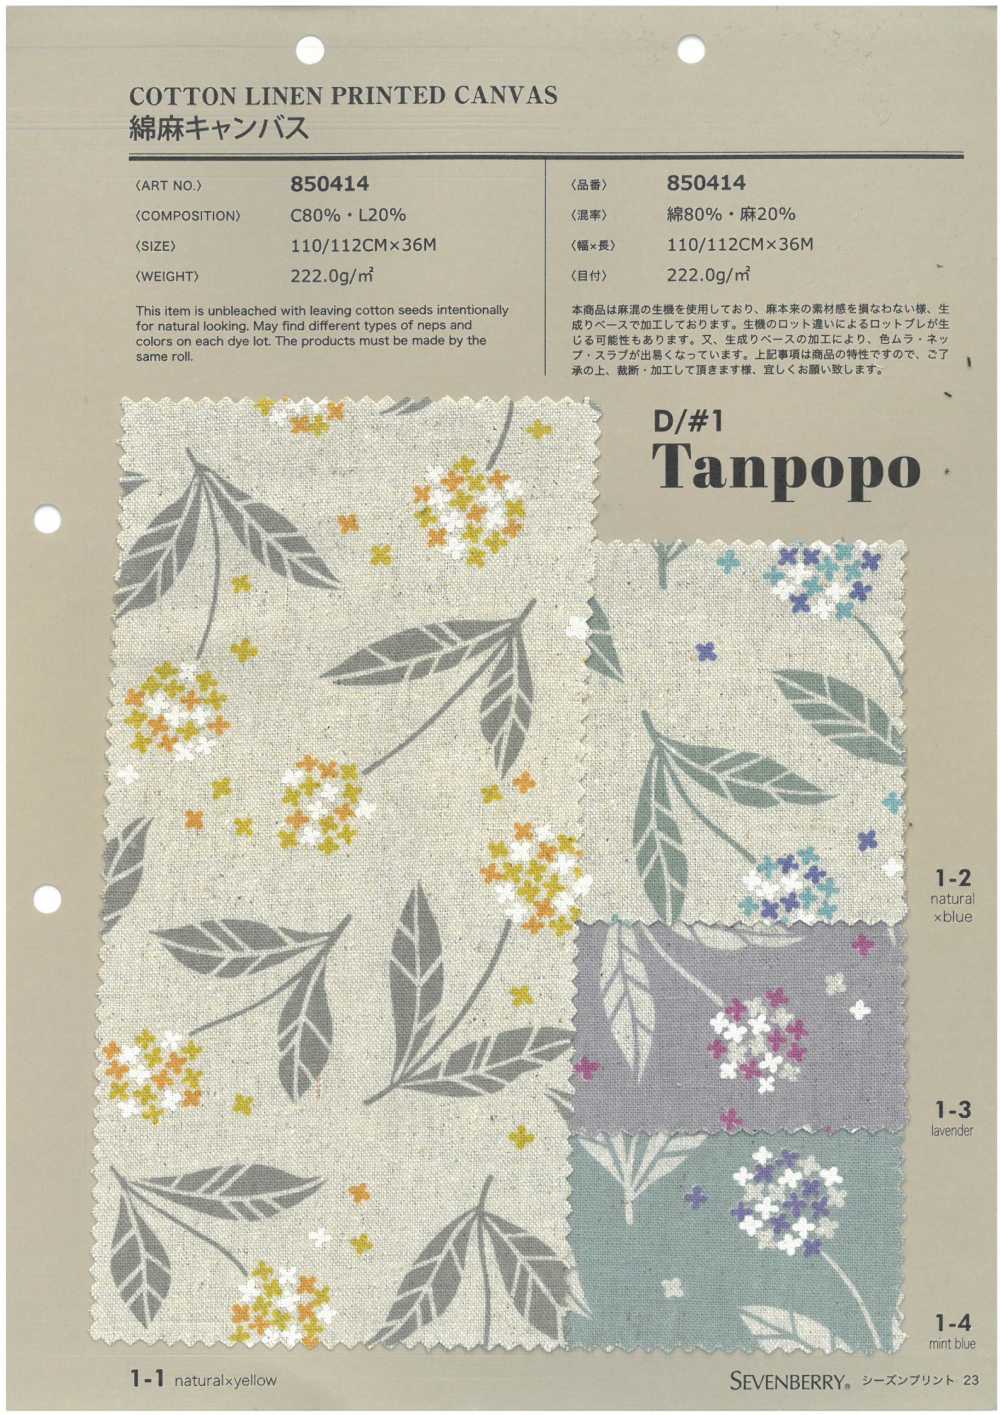 850414 綿麻キャンバス Tanpopo[生地] VANCET